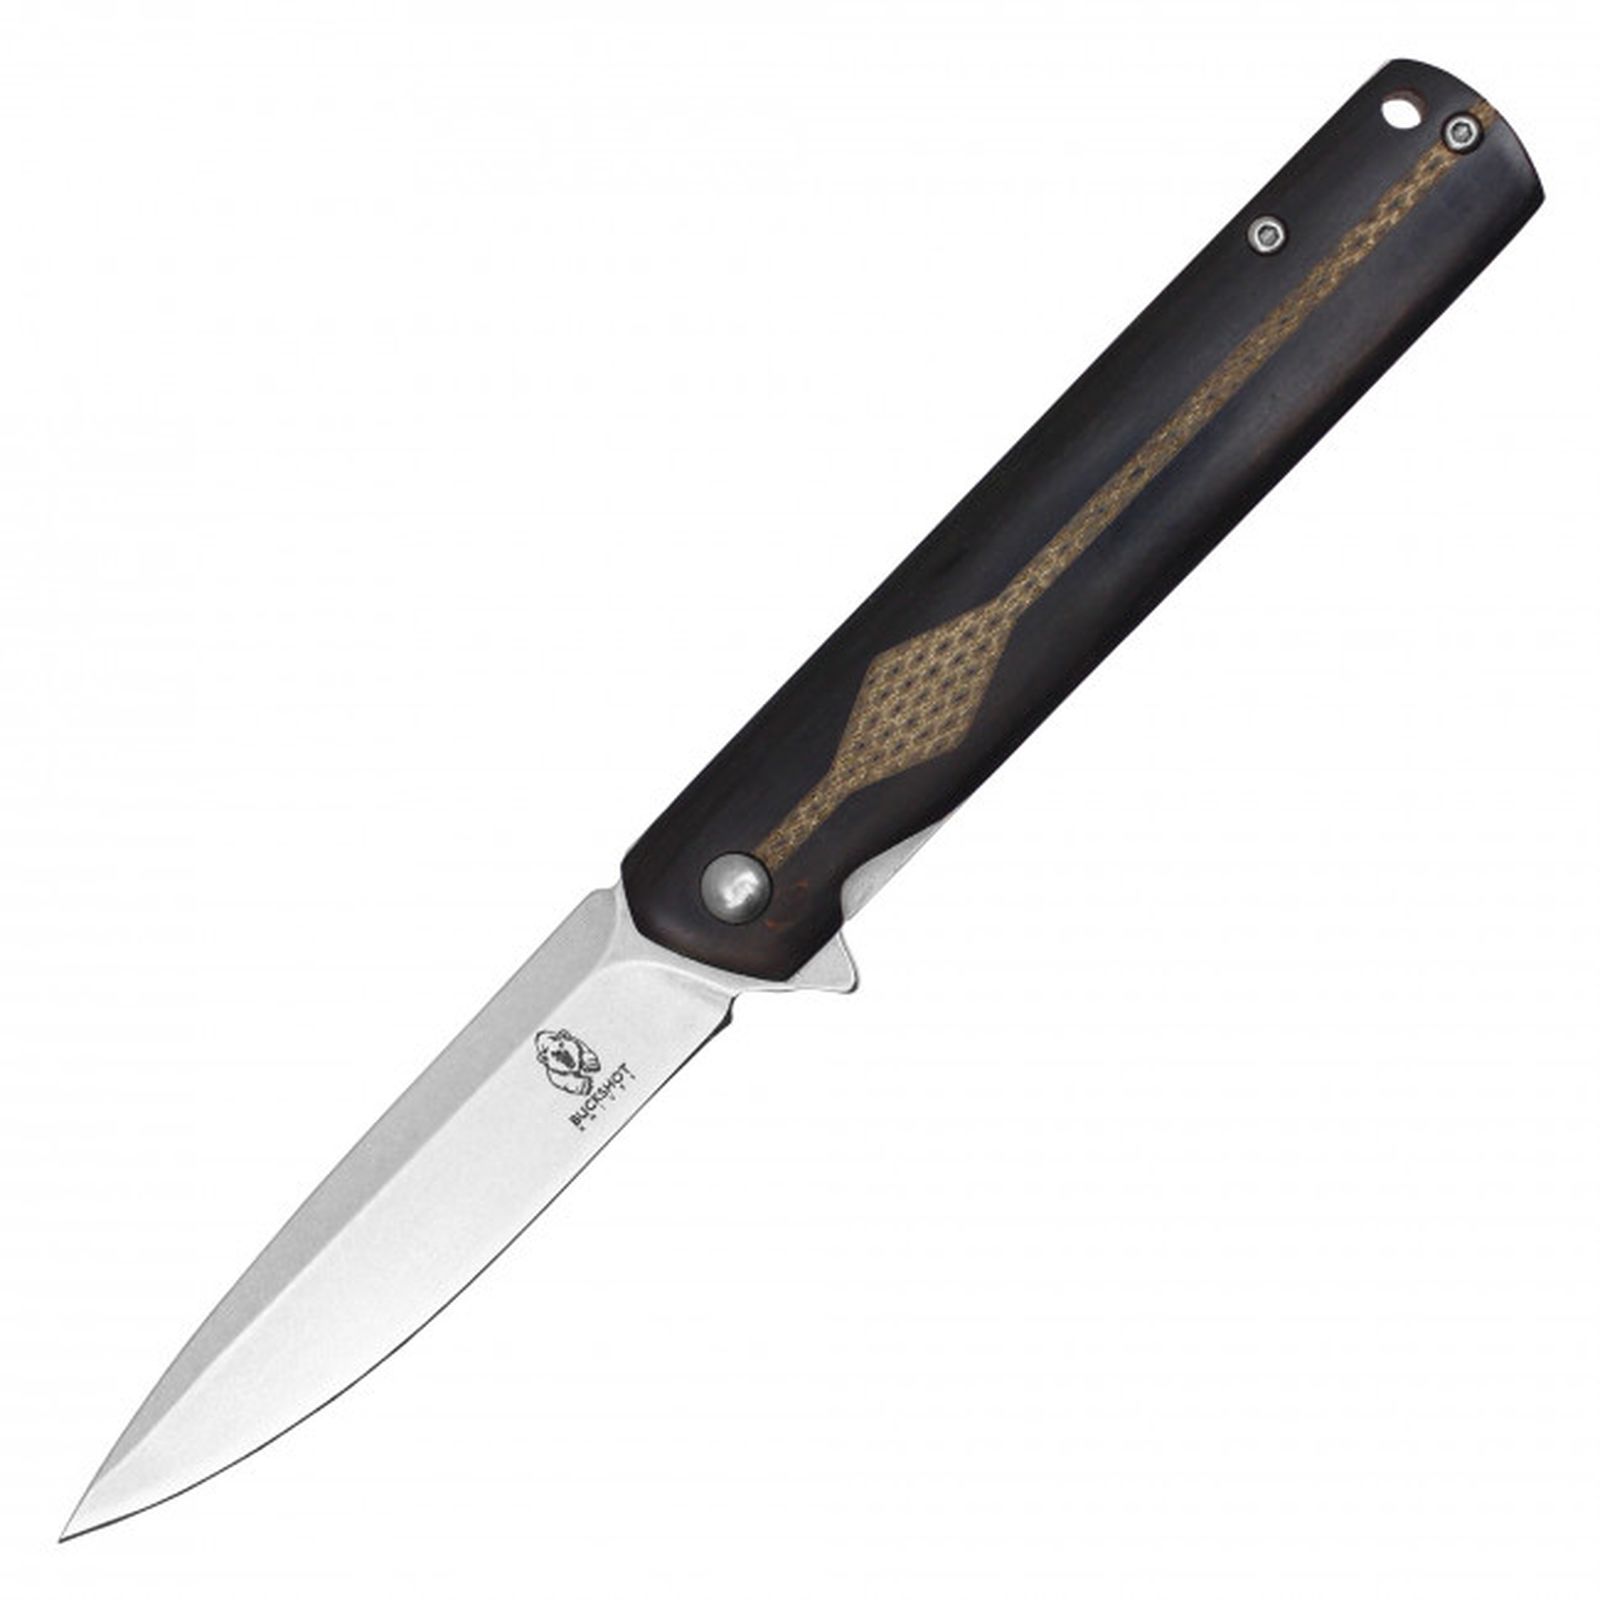 Pocket Knife Buckshot Spring-Assist Folding Blade Pocket Clip - Black Wood